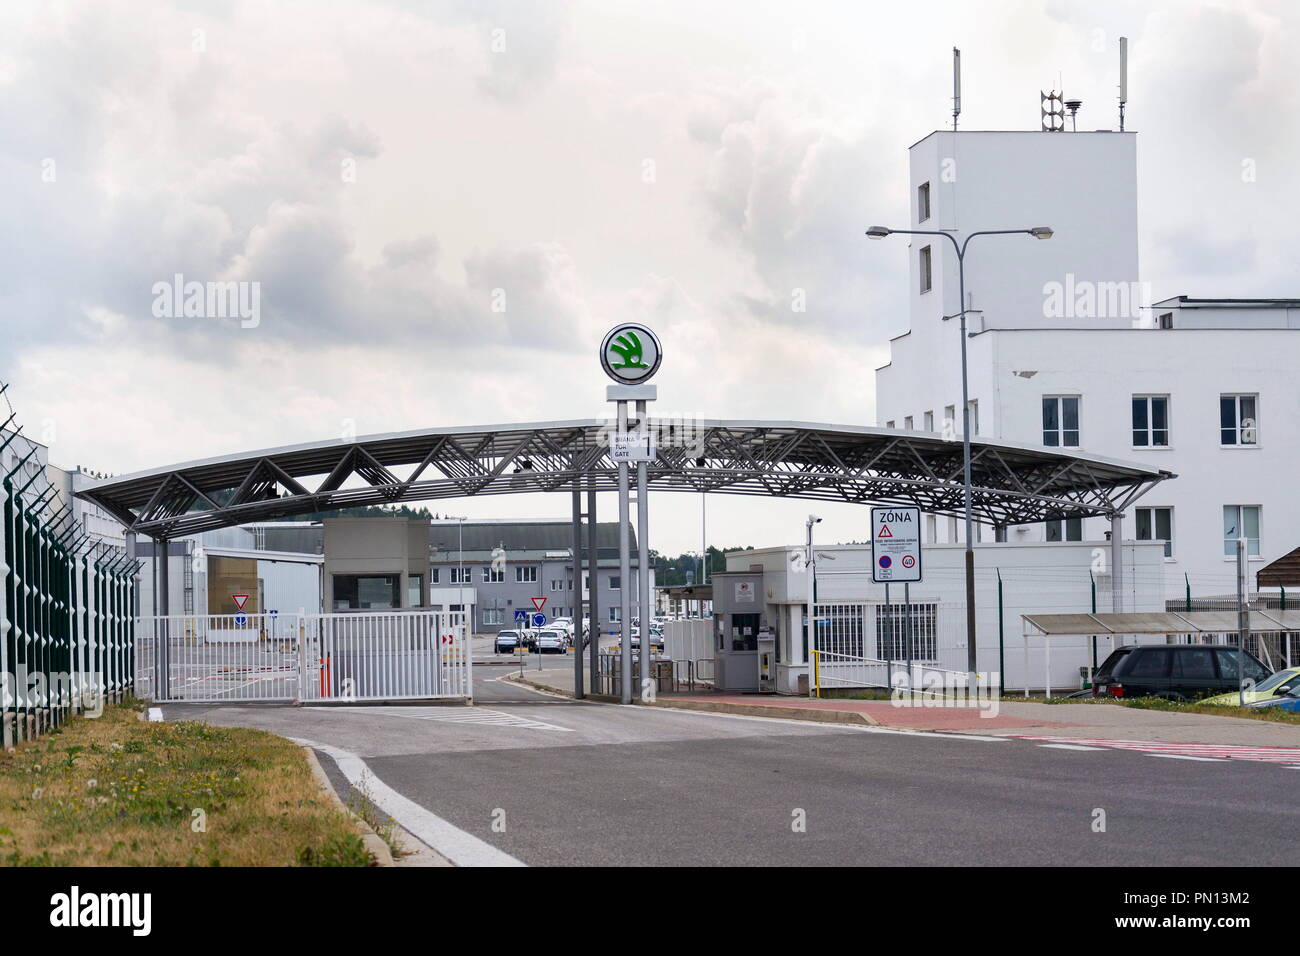 VRCHLABI, RÉPUBLIQUE TCHÈQUE - 25 août 2018 : Skoda Auto fabricant automobile de Volkswagen Group company logo sur la passerelle de l'usine le 25 août 2018 Banque D'Images